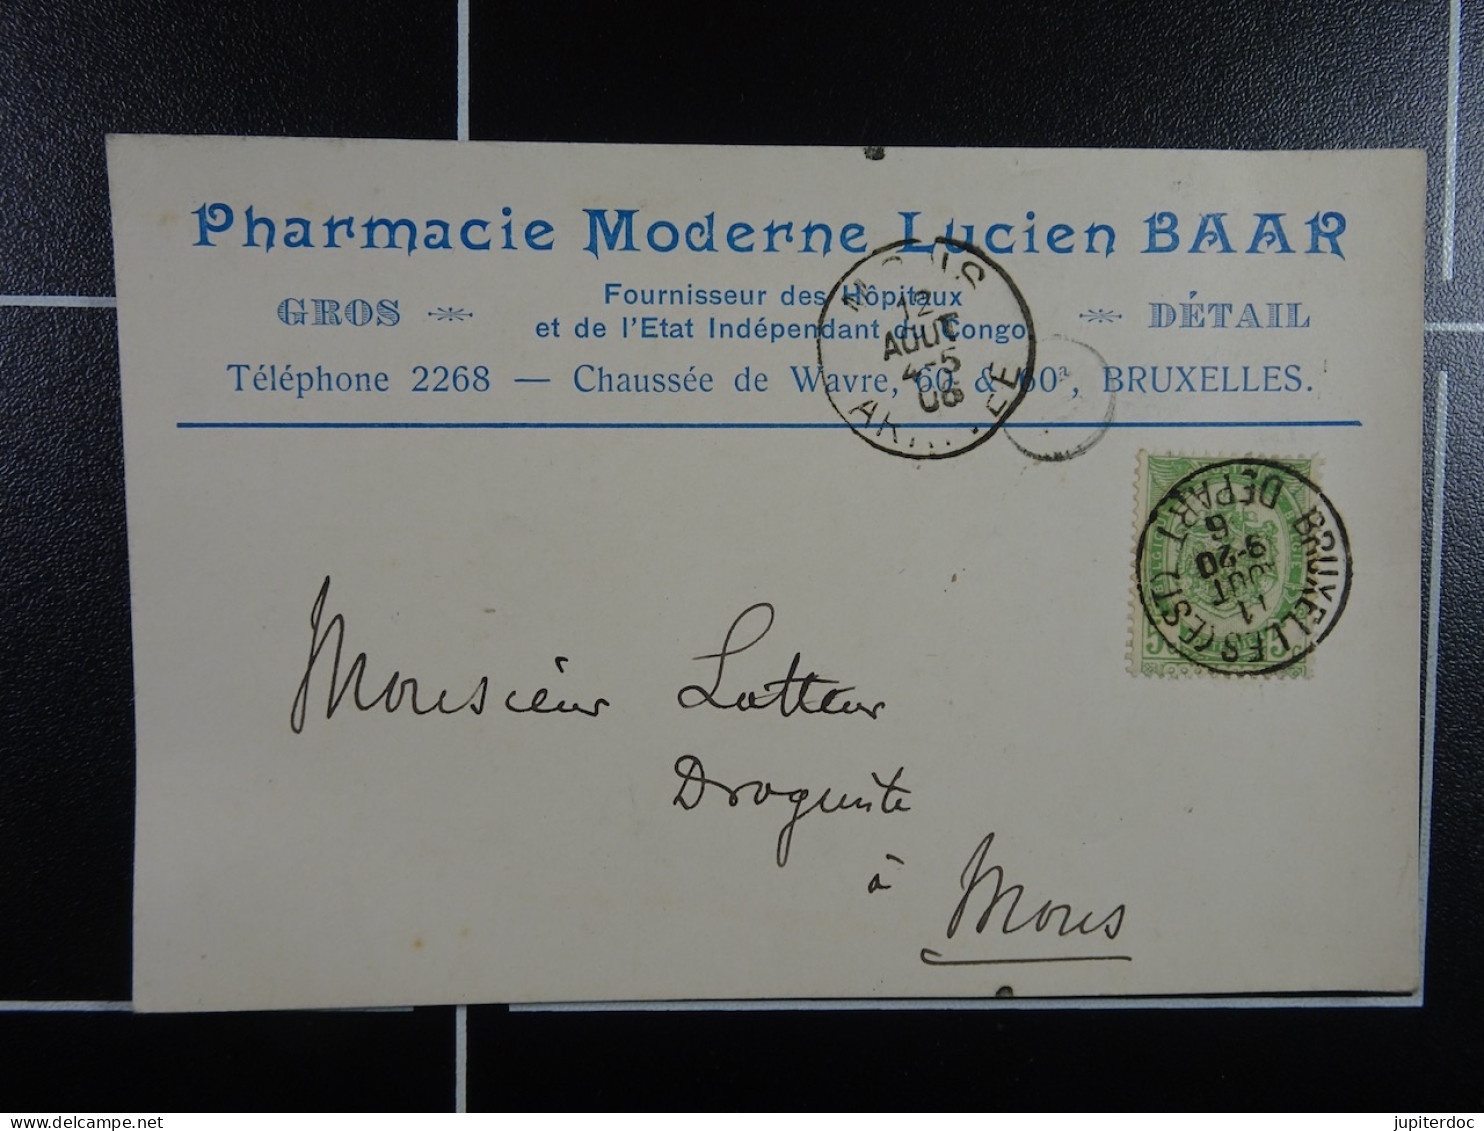 Pharmacie Moderne Lucien Baar Fournisseur Des Hôpitaux Et L'Etat Indépendant Du Congo Bruxelles - Shopkeepers